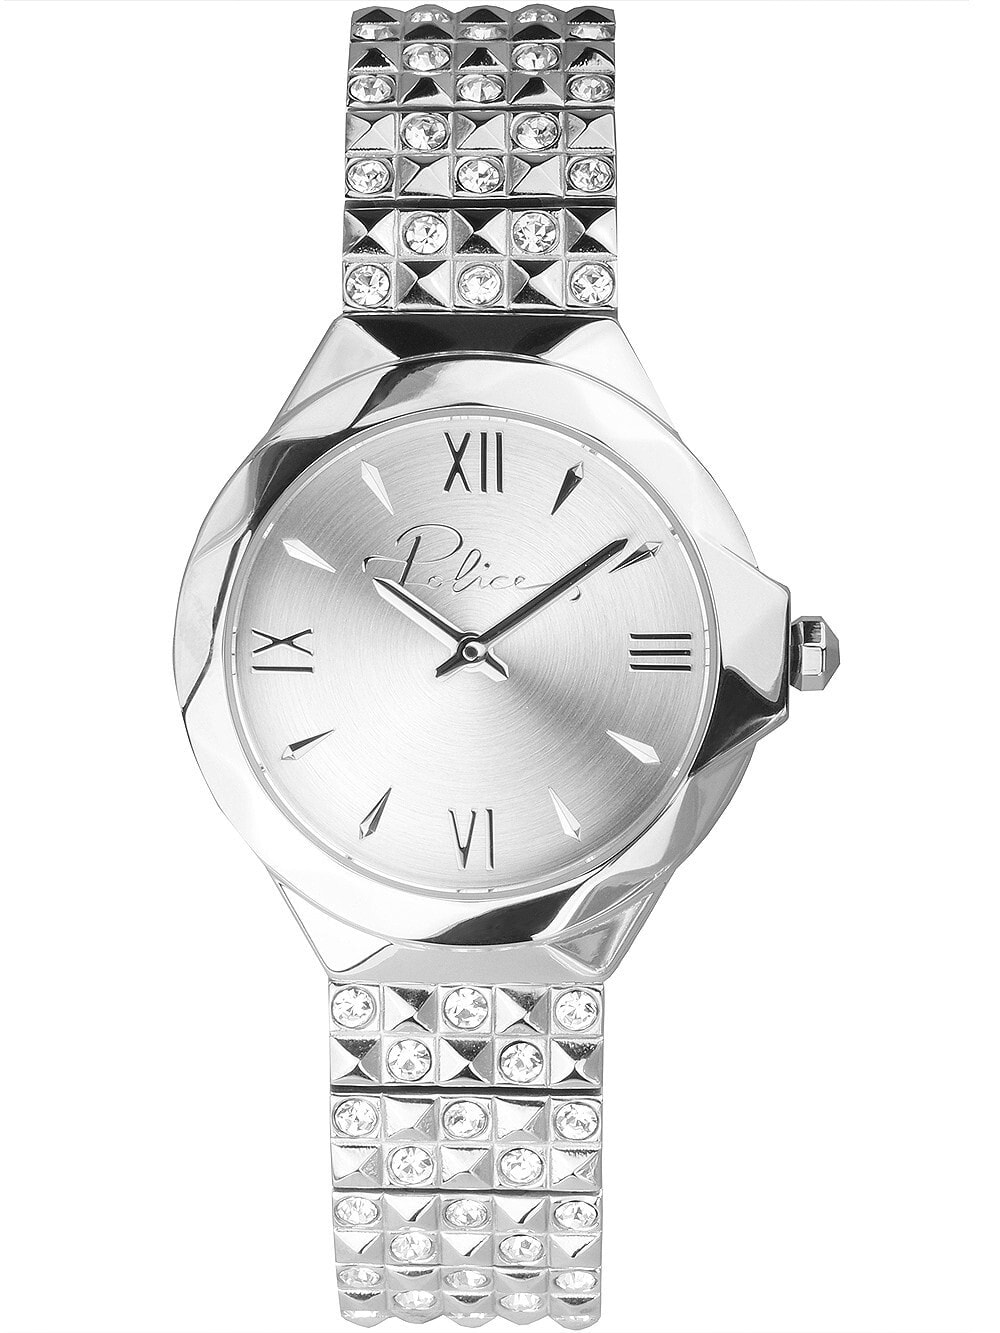 Женские наручные кварцевые часы Police ремешок из нержавеющей стали. Водонепроницаемость-3 АТМ. Защищенное от царапин минеральное стекло.